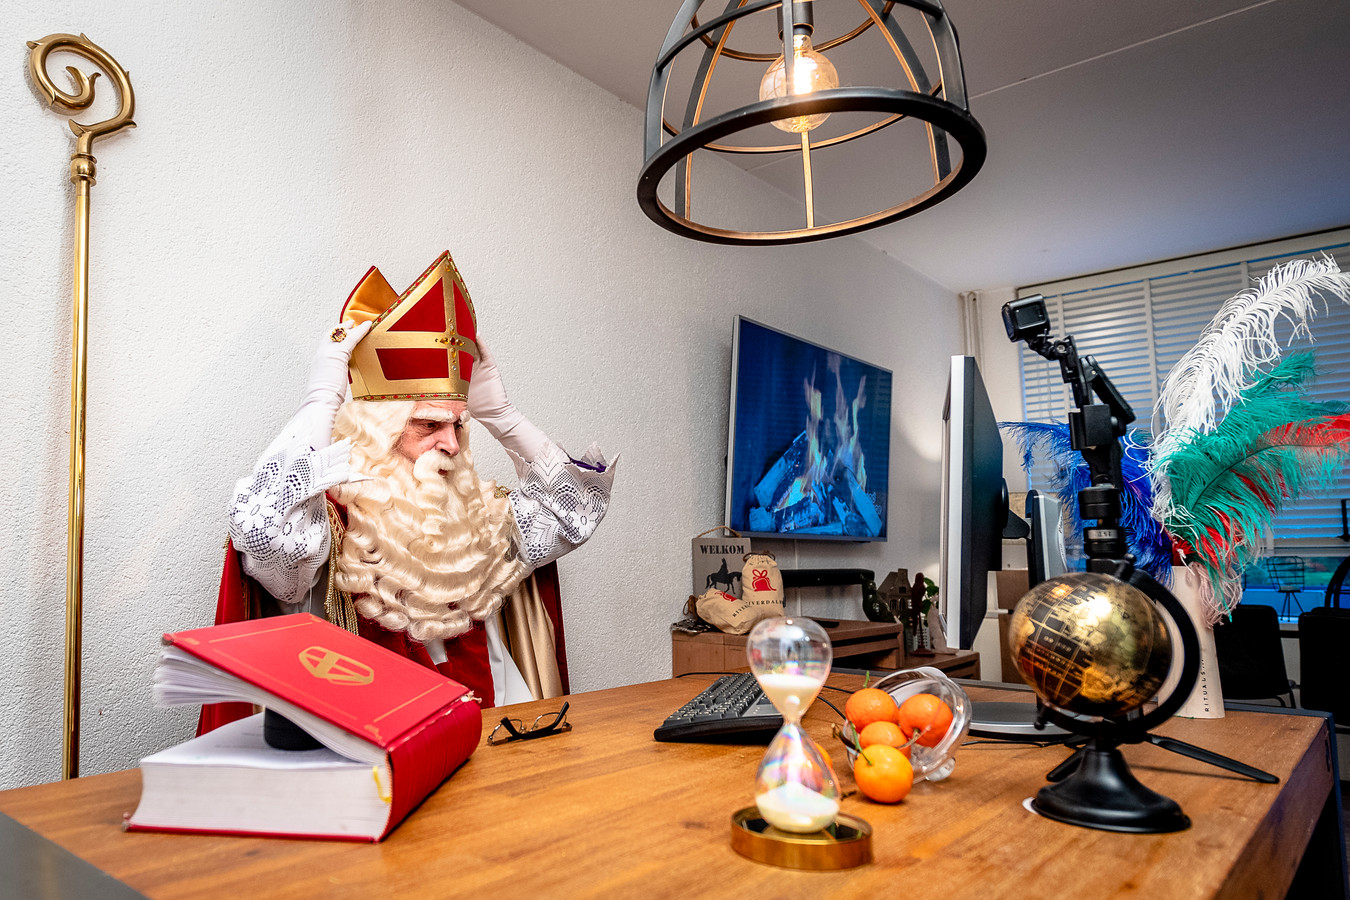 Sinterklaas gaat dit jaar videobellen met de kinderen thuis in plaats van op huisbezoek.